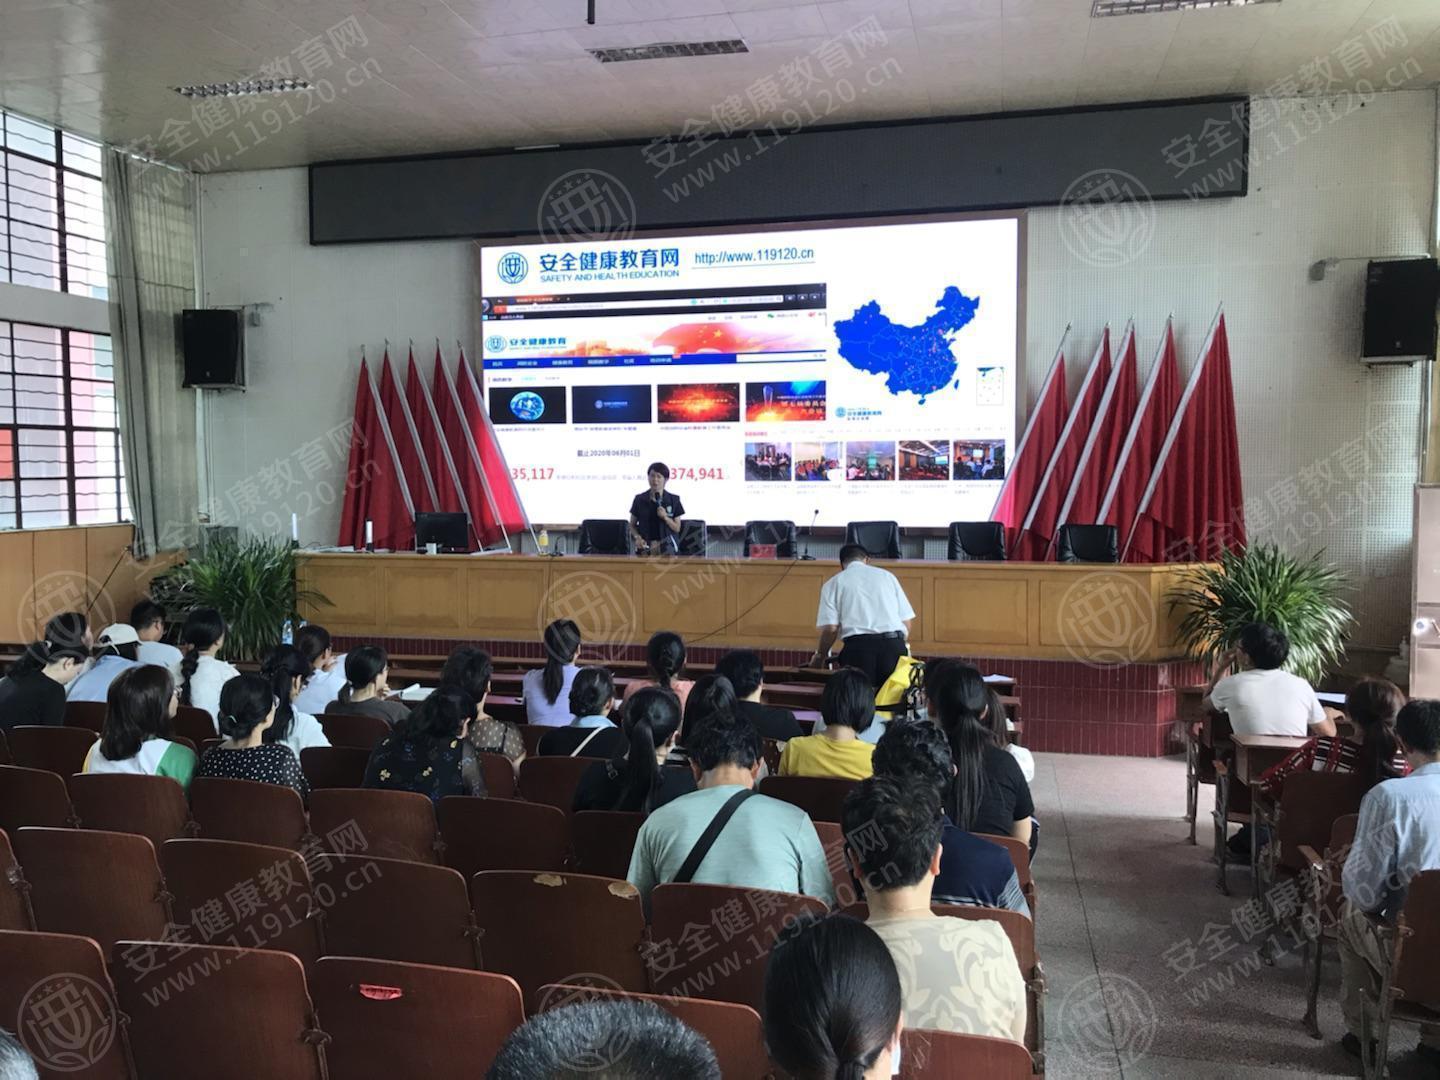 云南省临沧市临翔区第一中学(高中部)举办健康急救公益讲座 安全健康